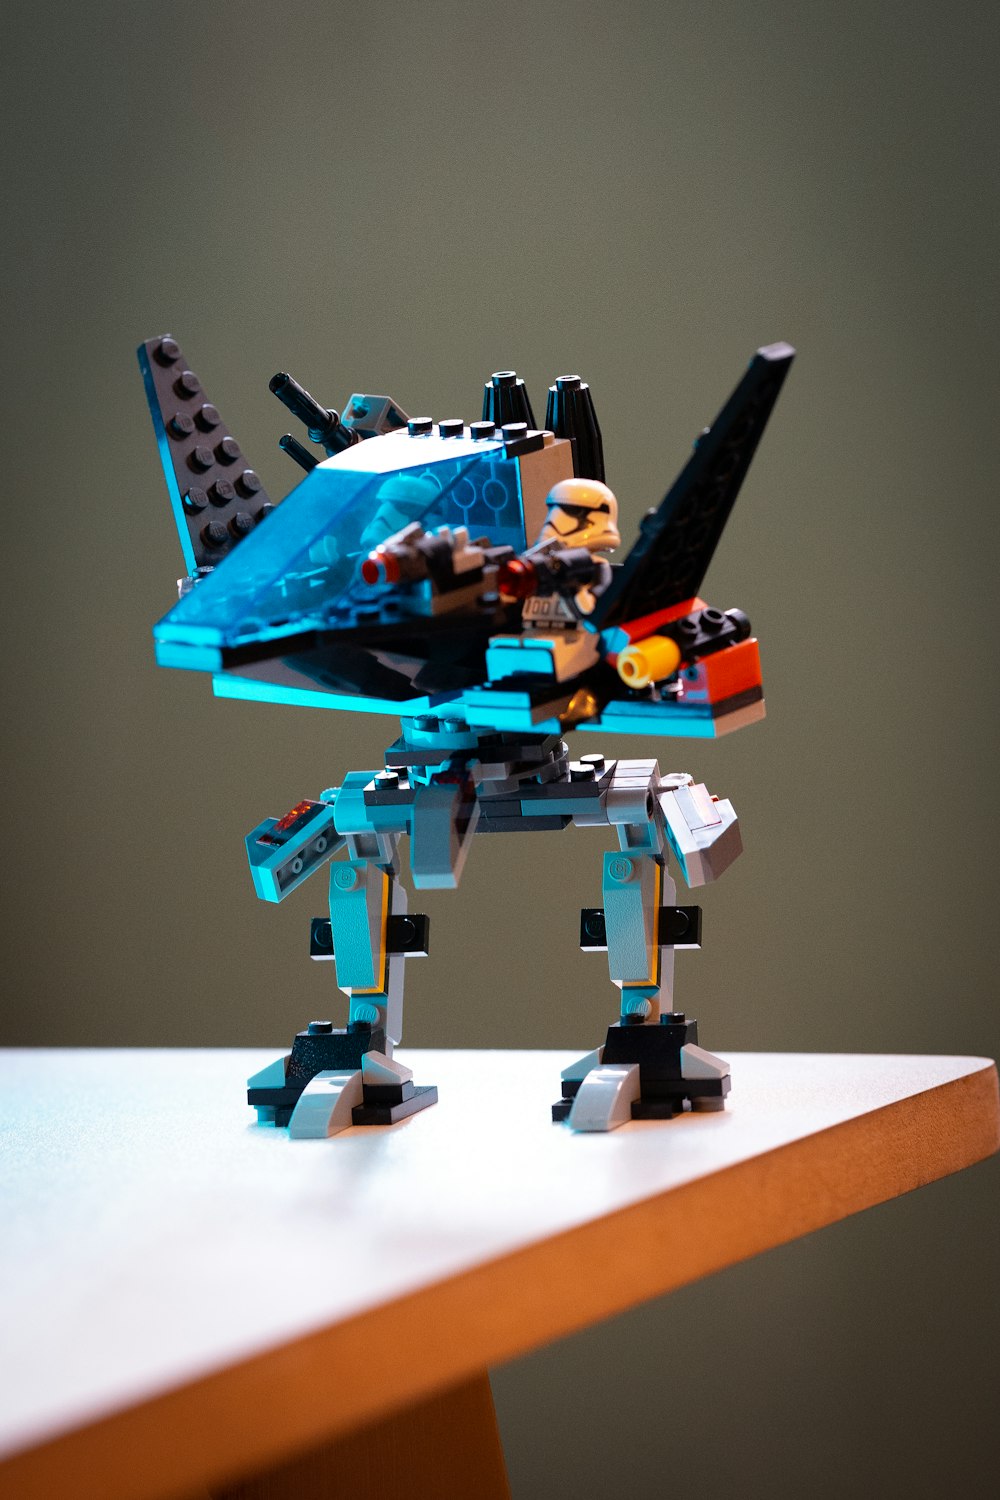 Imágenes de Lego Robot | Descarga imágenes gratuitas en Unsplash